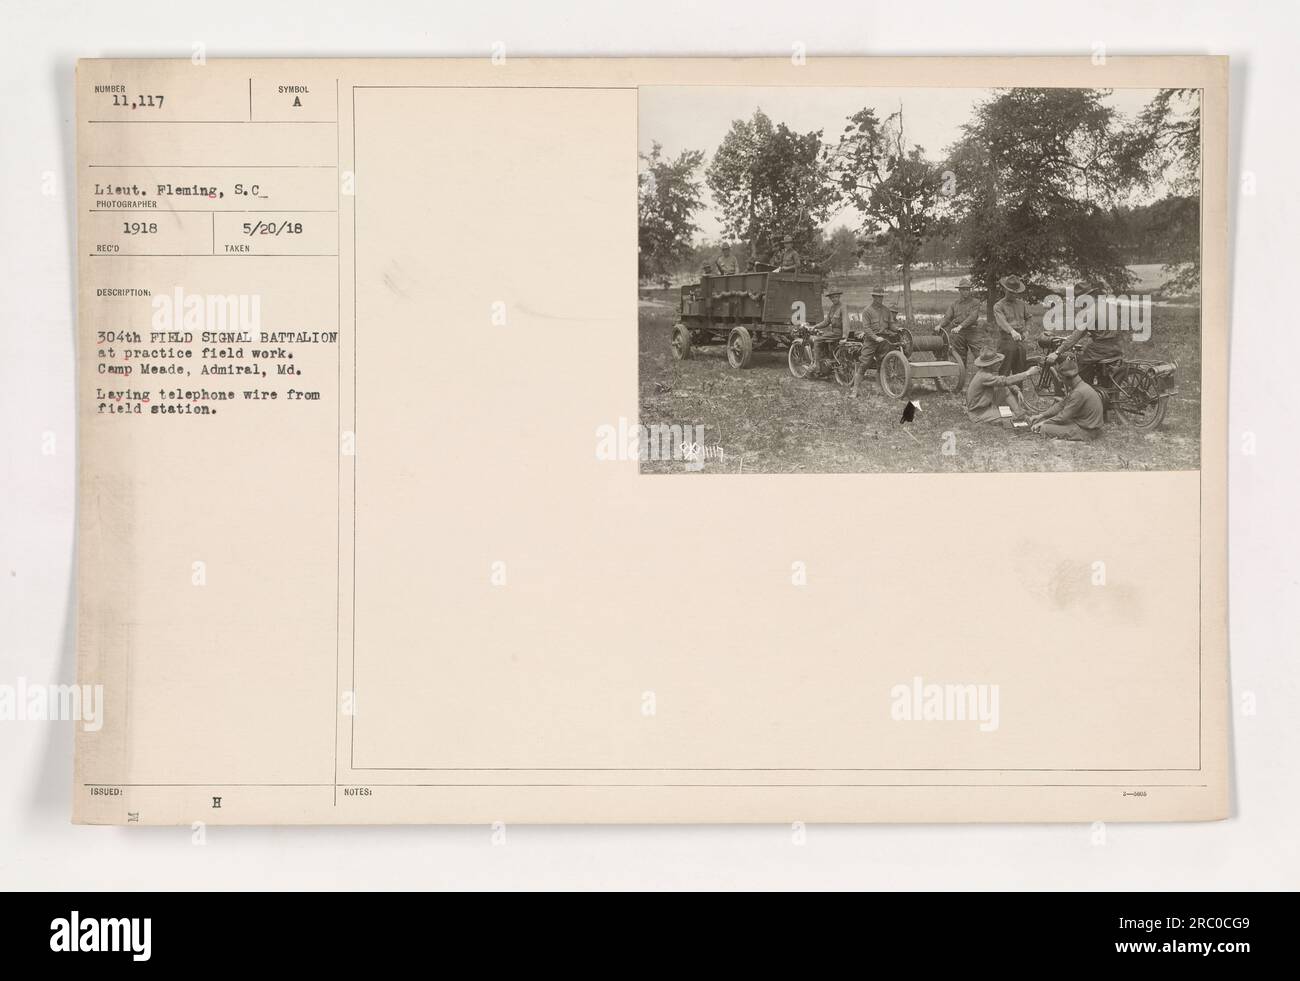 Lieutenant Plening vom 304. Feldsignalbataillon wird gesehen, wie er Telefonkabel auf dem Übungsfeld in Camp Meade, Admiral, Maryland verlegt. Dieses Foto wurde 1918 im Rahmen der Ausbildung und Vorbereitung während des Ersten Weltkriegs aufgenommen. Bildunterschrift: 111-SC-11117 WINBER 11.117 Lieut. PLENING, S.C.-FOTOGRAF 1918 BESCHREIBUNG AUSGEGEBEN H-SYMBOL A 5/20/18 HAT NOTIZEN GEMACHT. Stockfoto